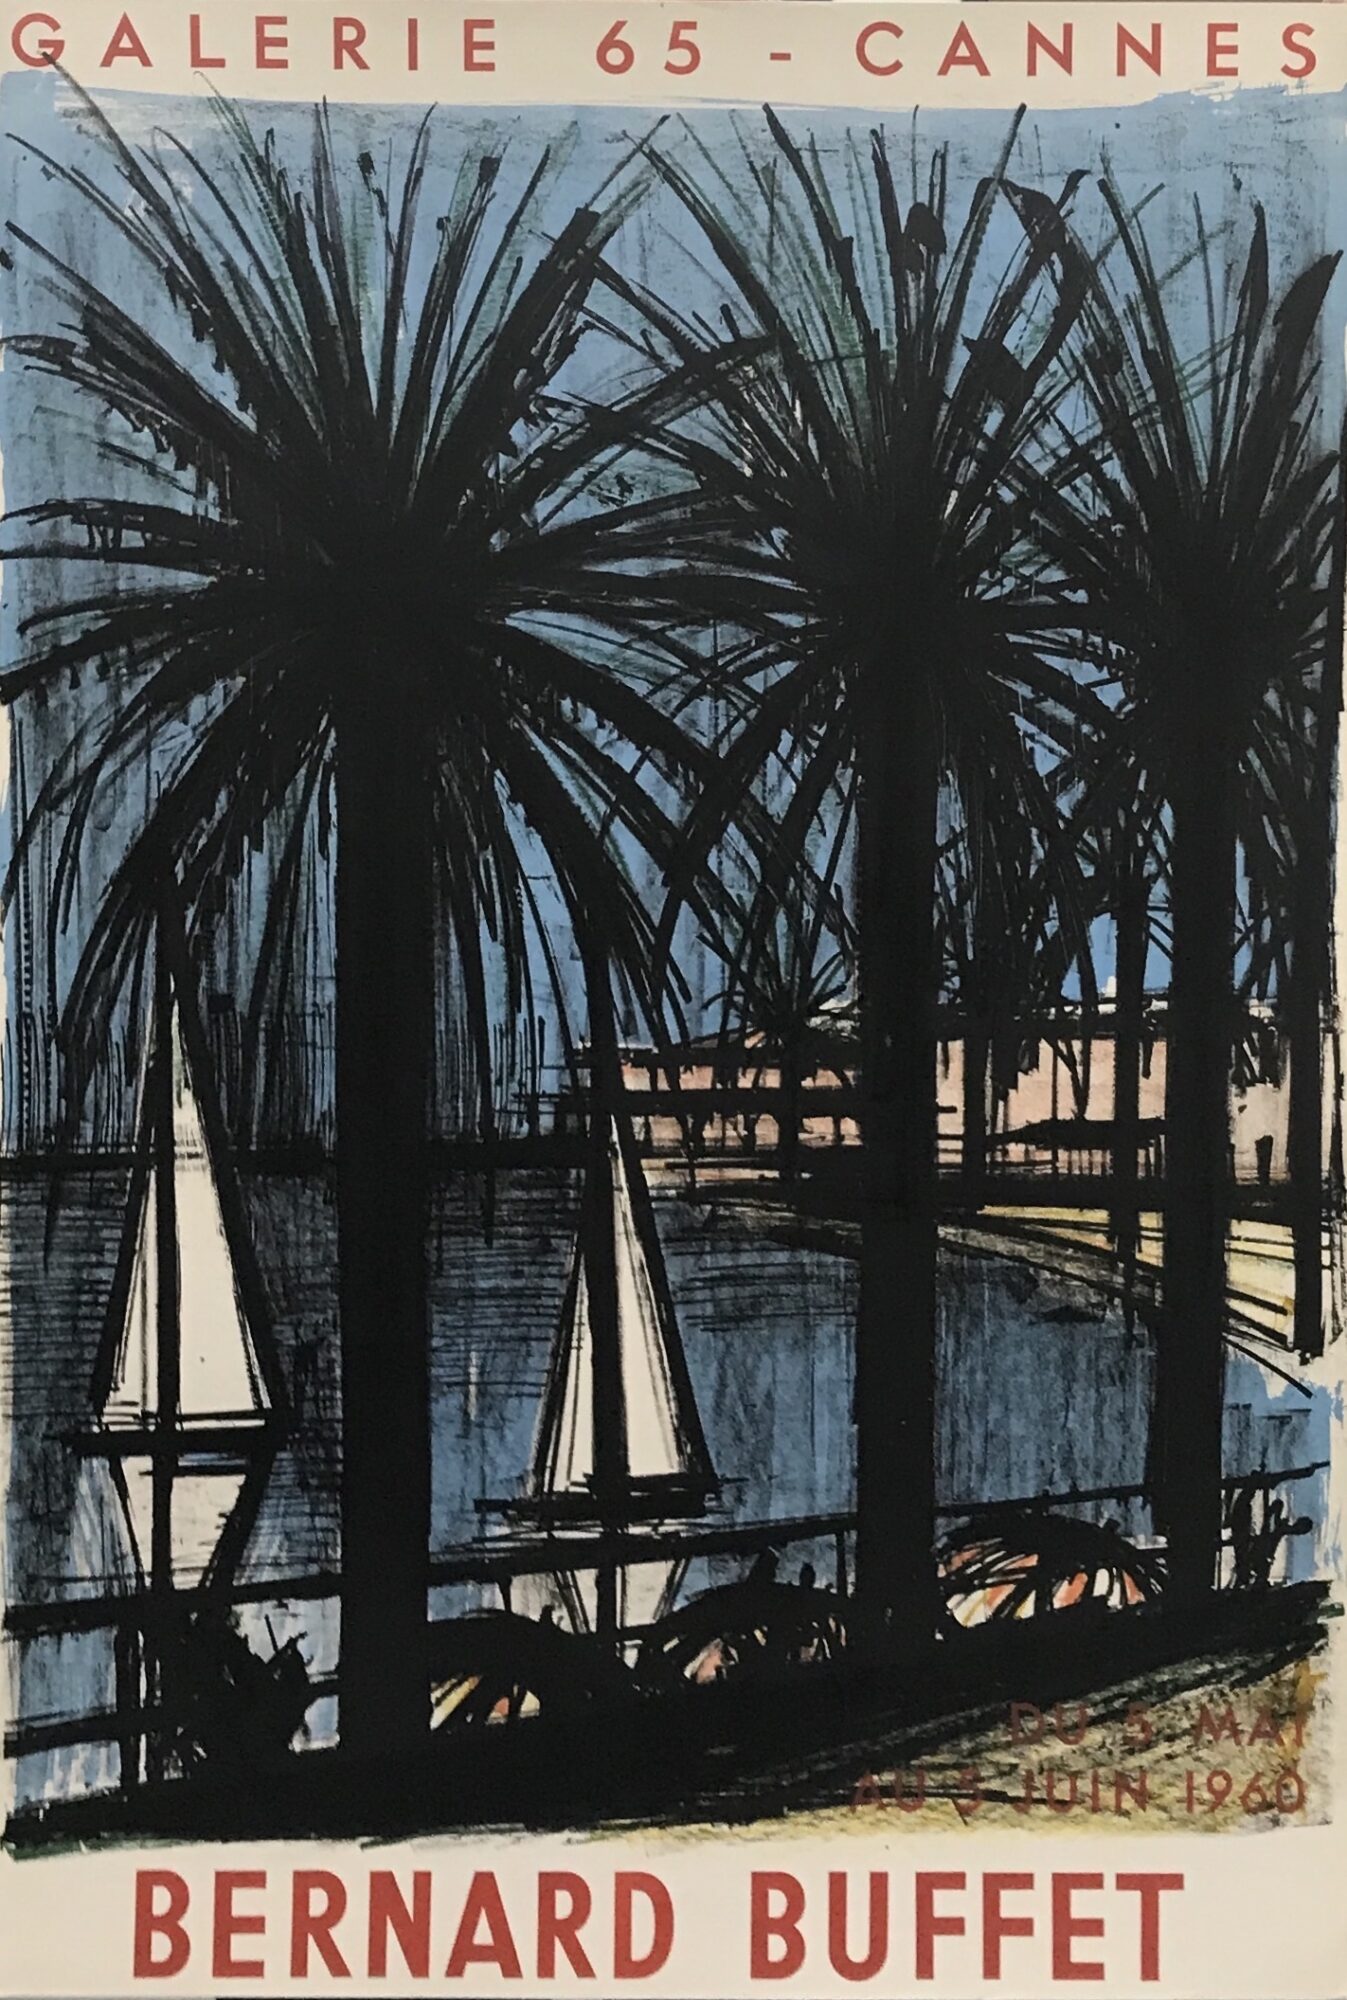 Galerie 65 - Cannes, 1960 by Bernard Buffet - Denis Bloch Fine Art